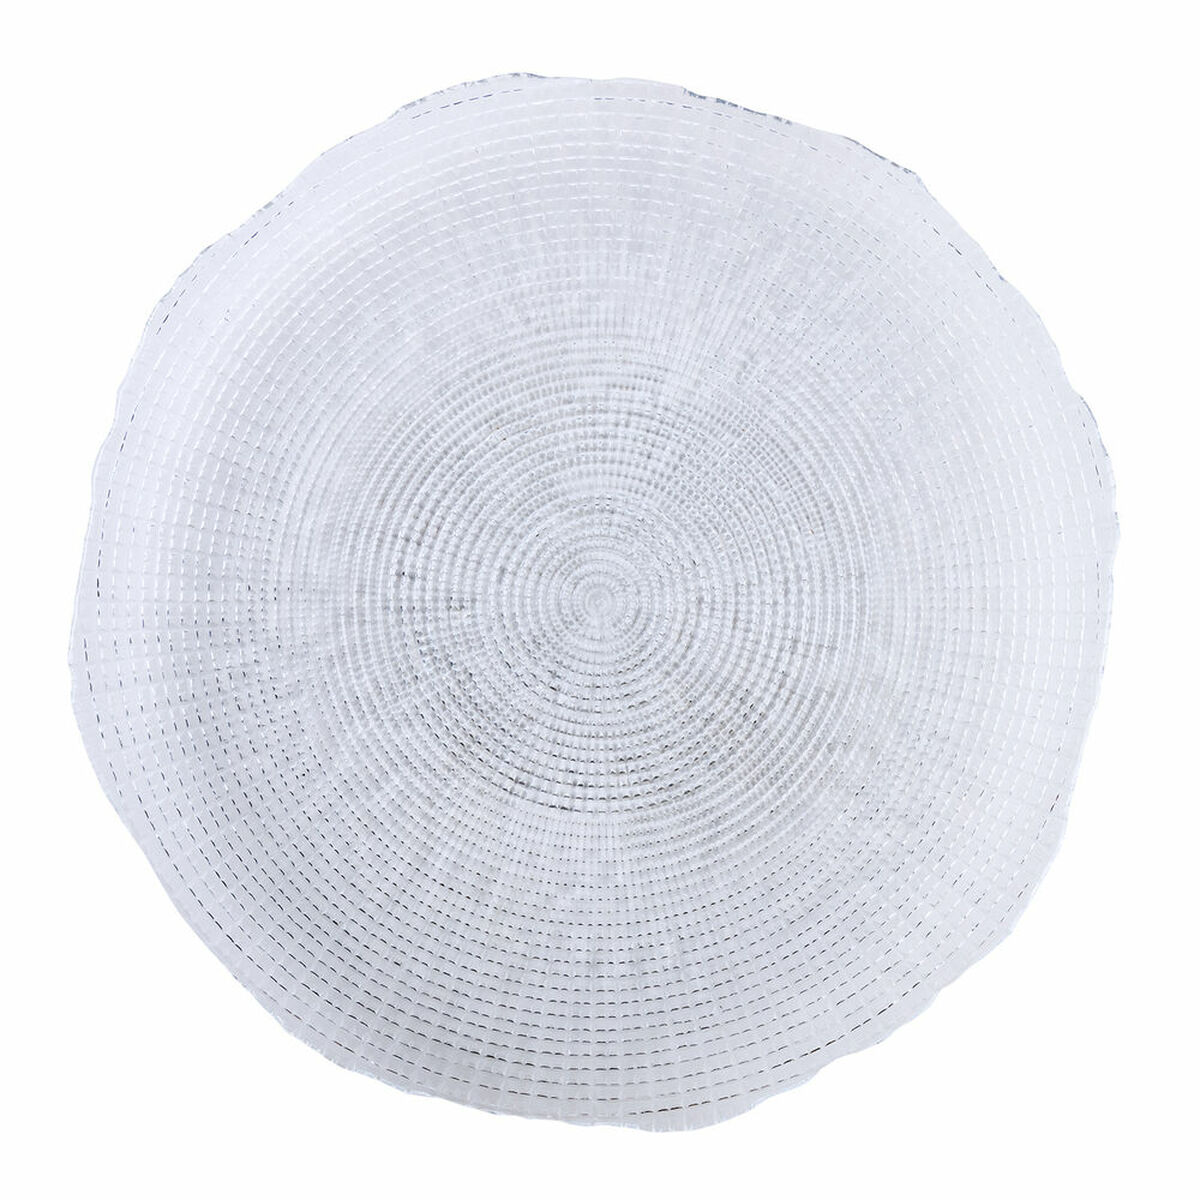 Dessous d'Assiette Quid Boreal Transparent verre Ø 32 cm (6 Unités) (Pack 6x)